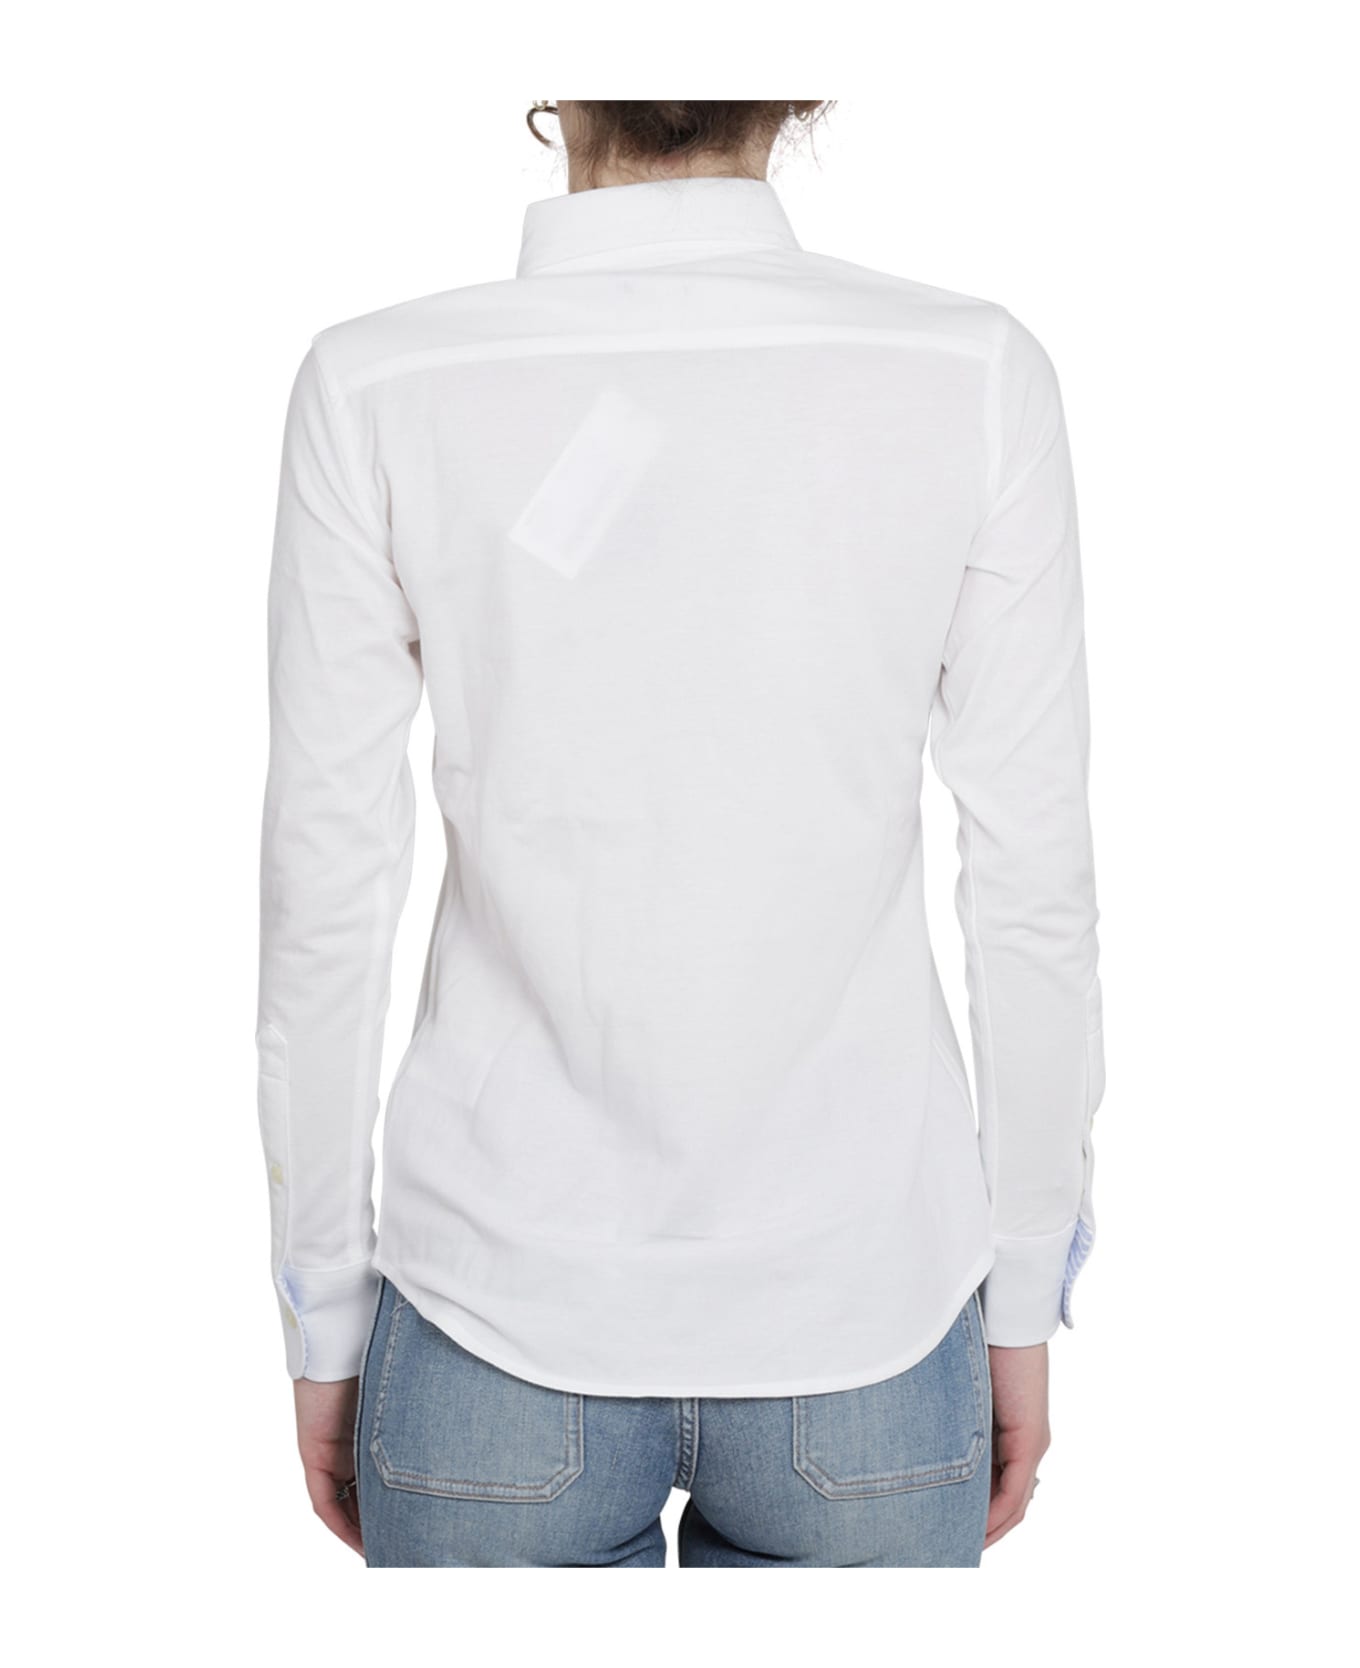 Ralph Lauren White Heidi Shirt - White シャツ